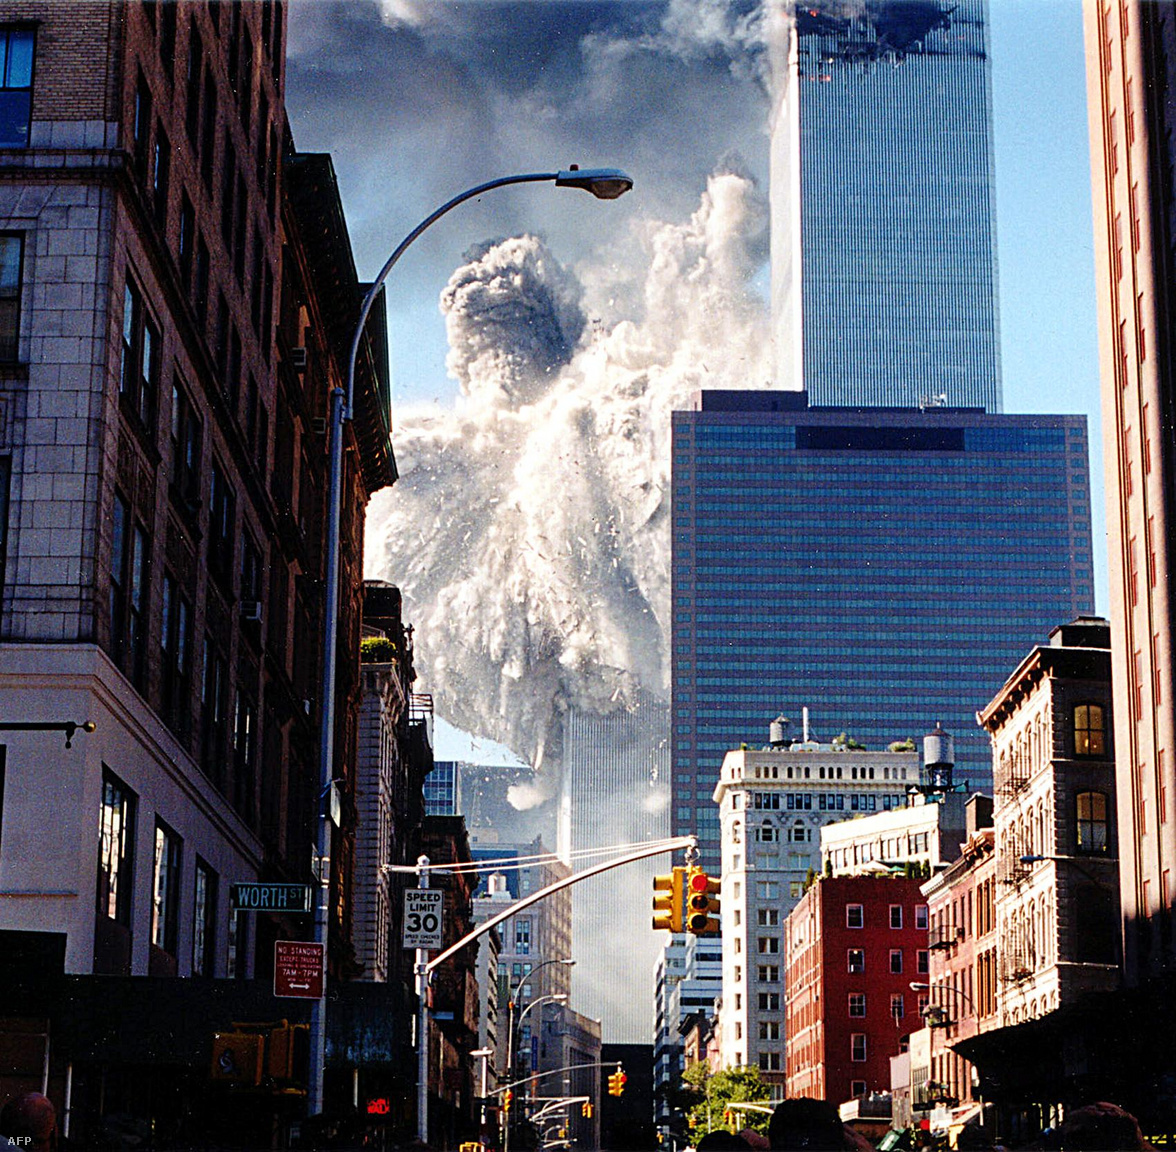 A World Trade Center déli tornya összeomlik, por és füst lepi el az utcákat.